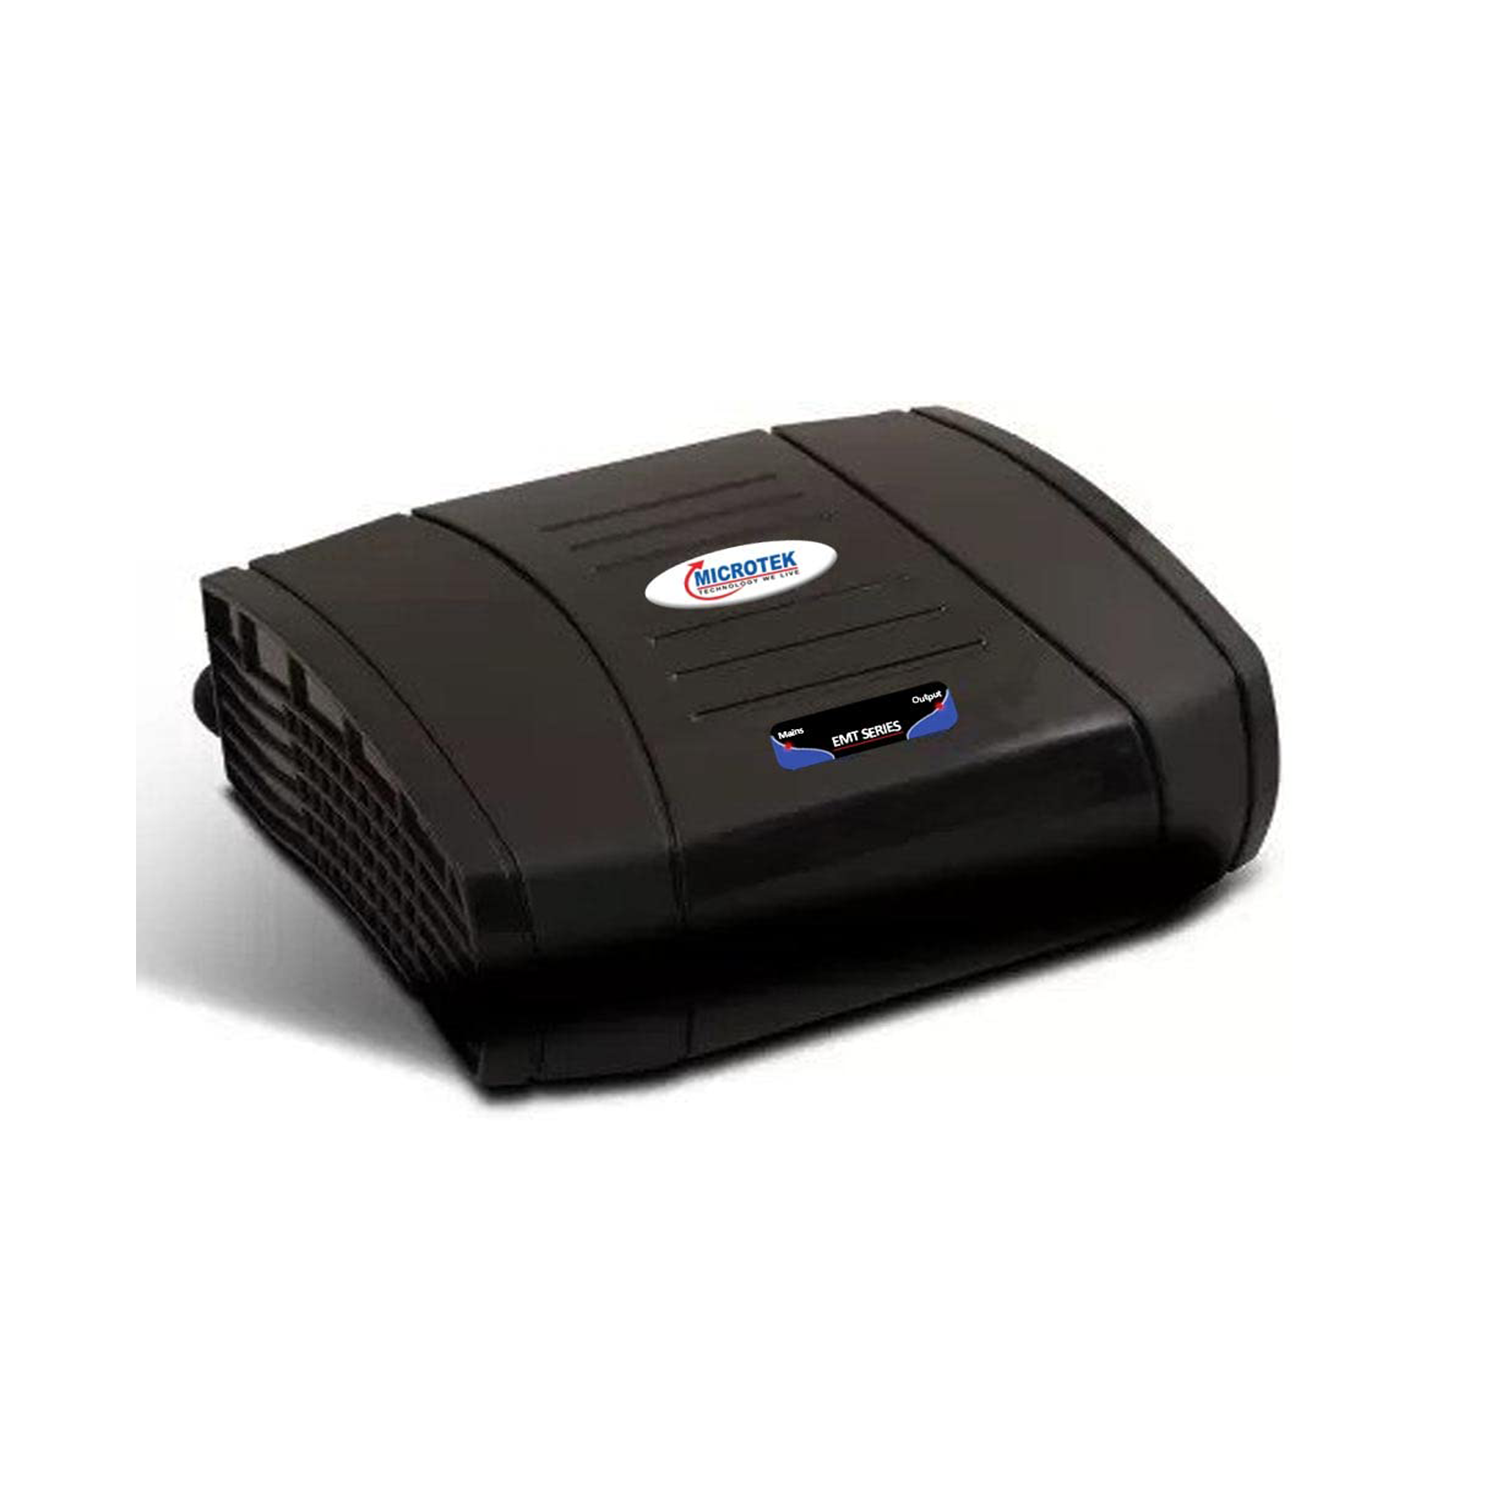 Microtek EMT0790 Digital Automatic Voltage Stabilizer 90V-300V (Black)